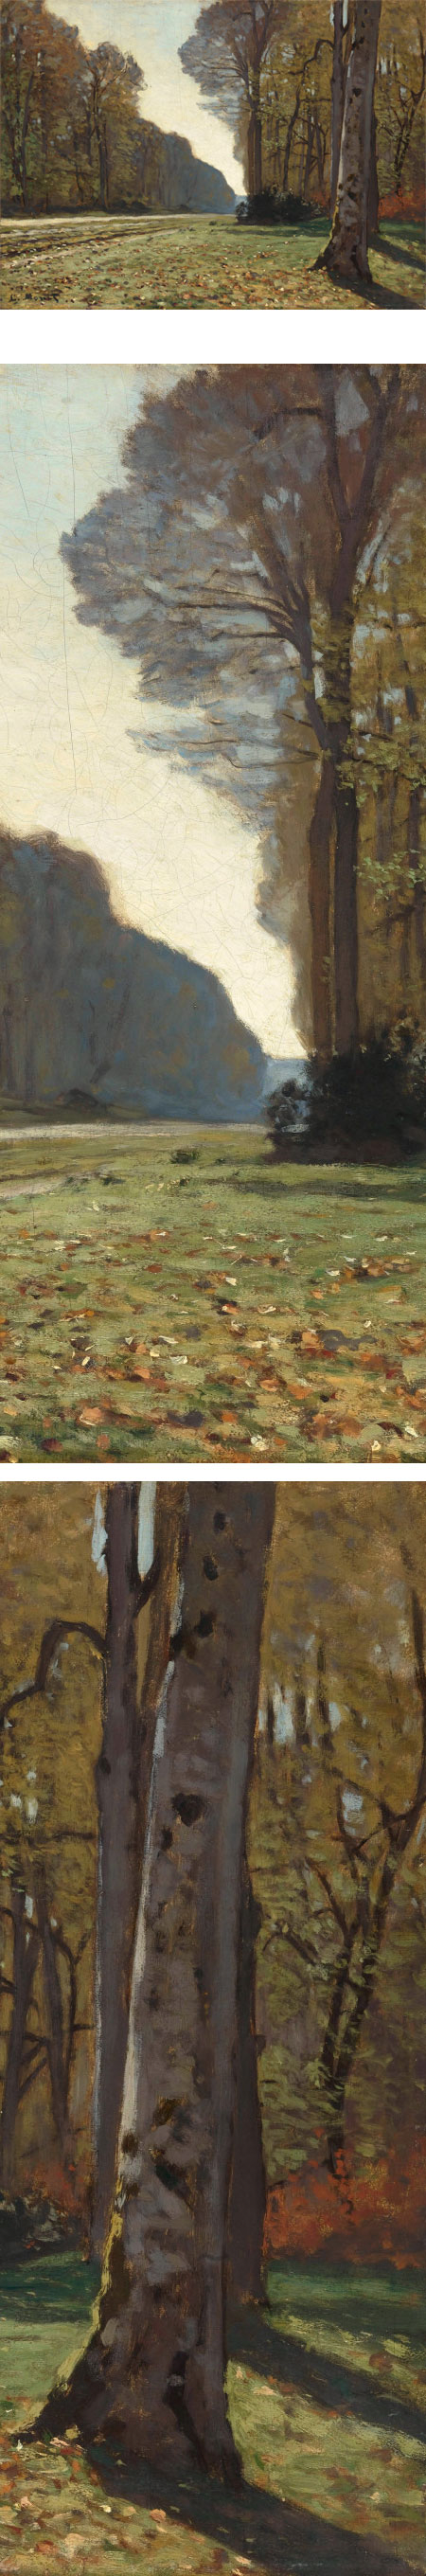 Pave de Chailly, Claude Monet